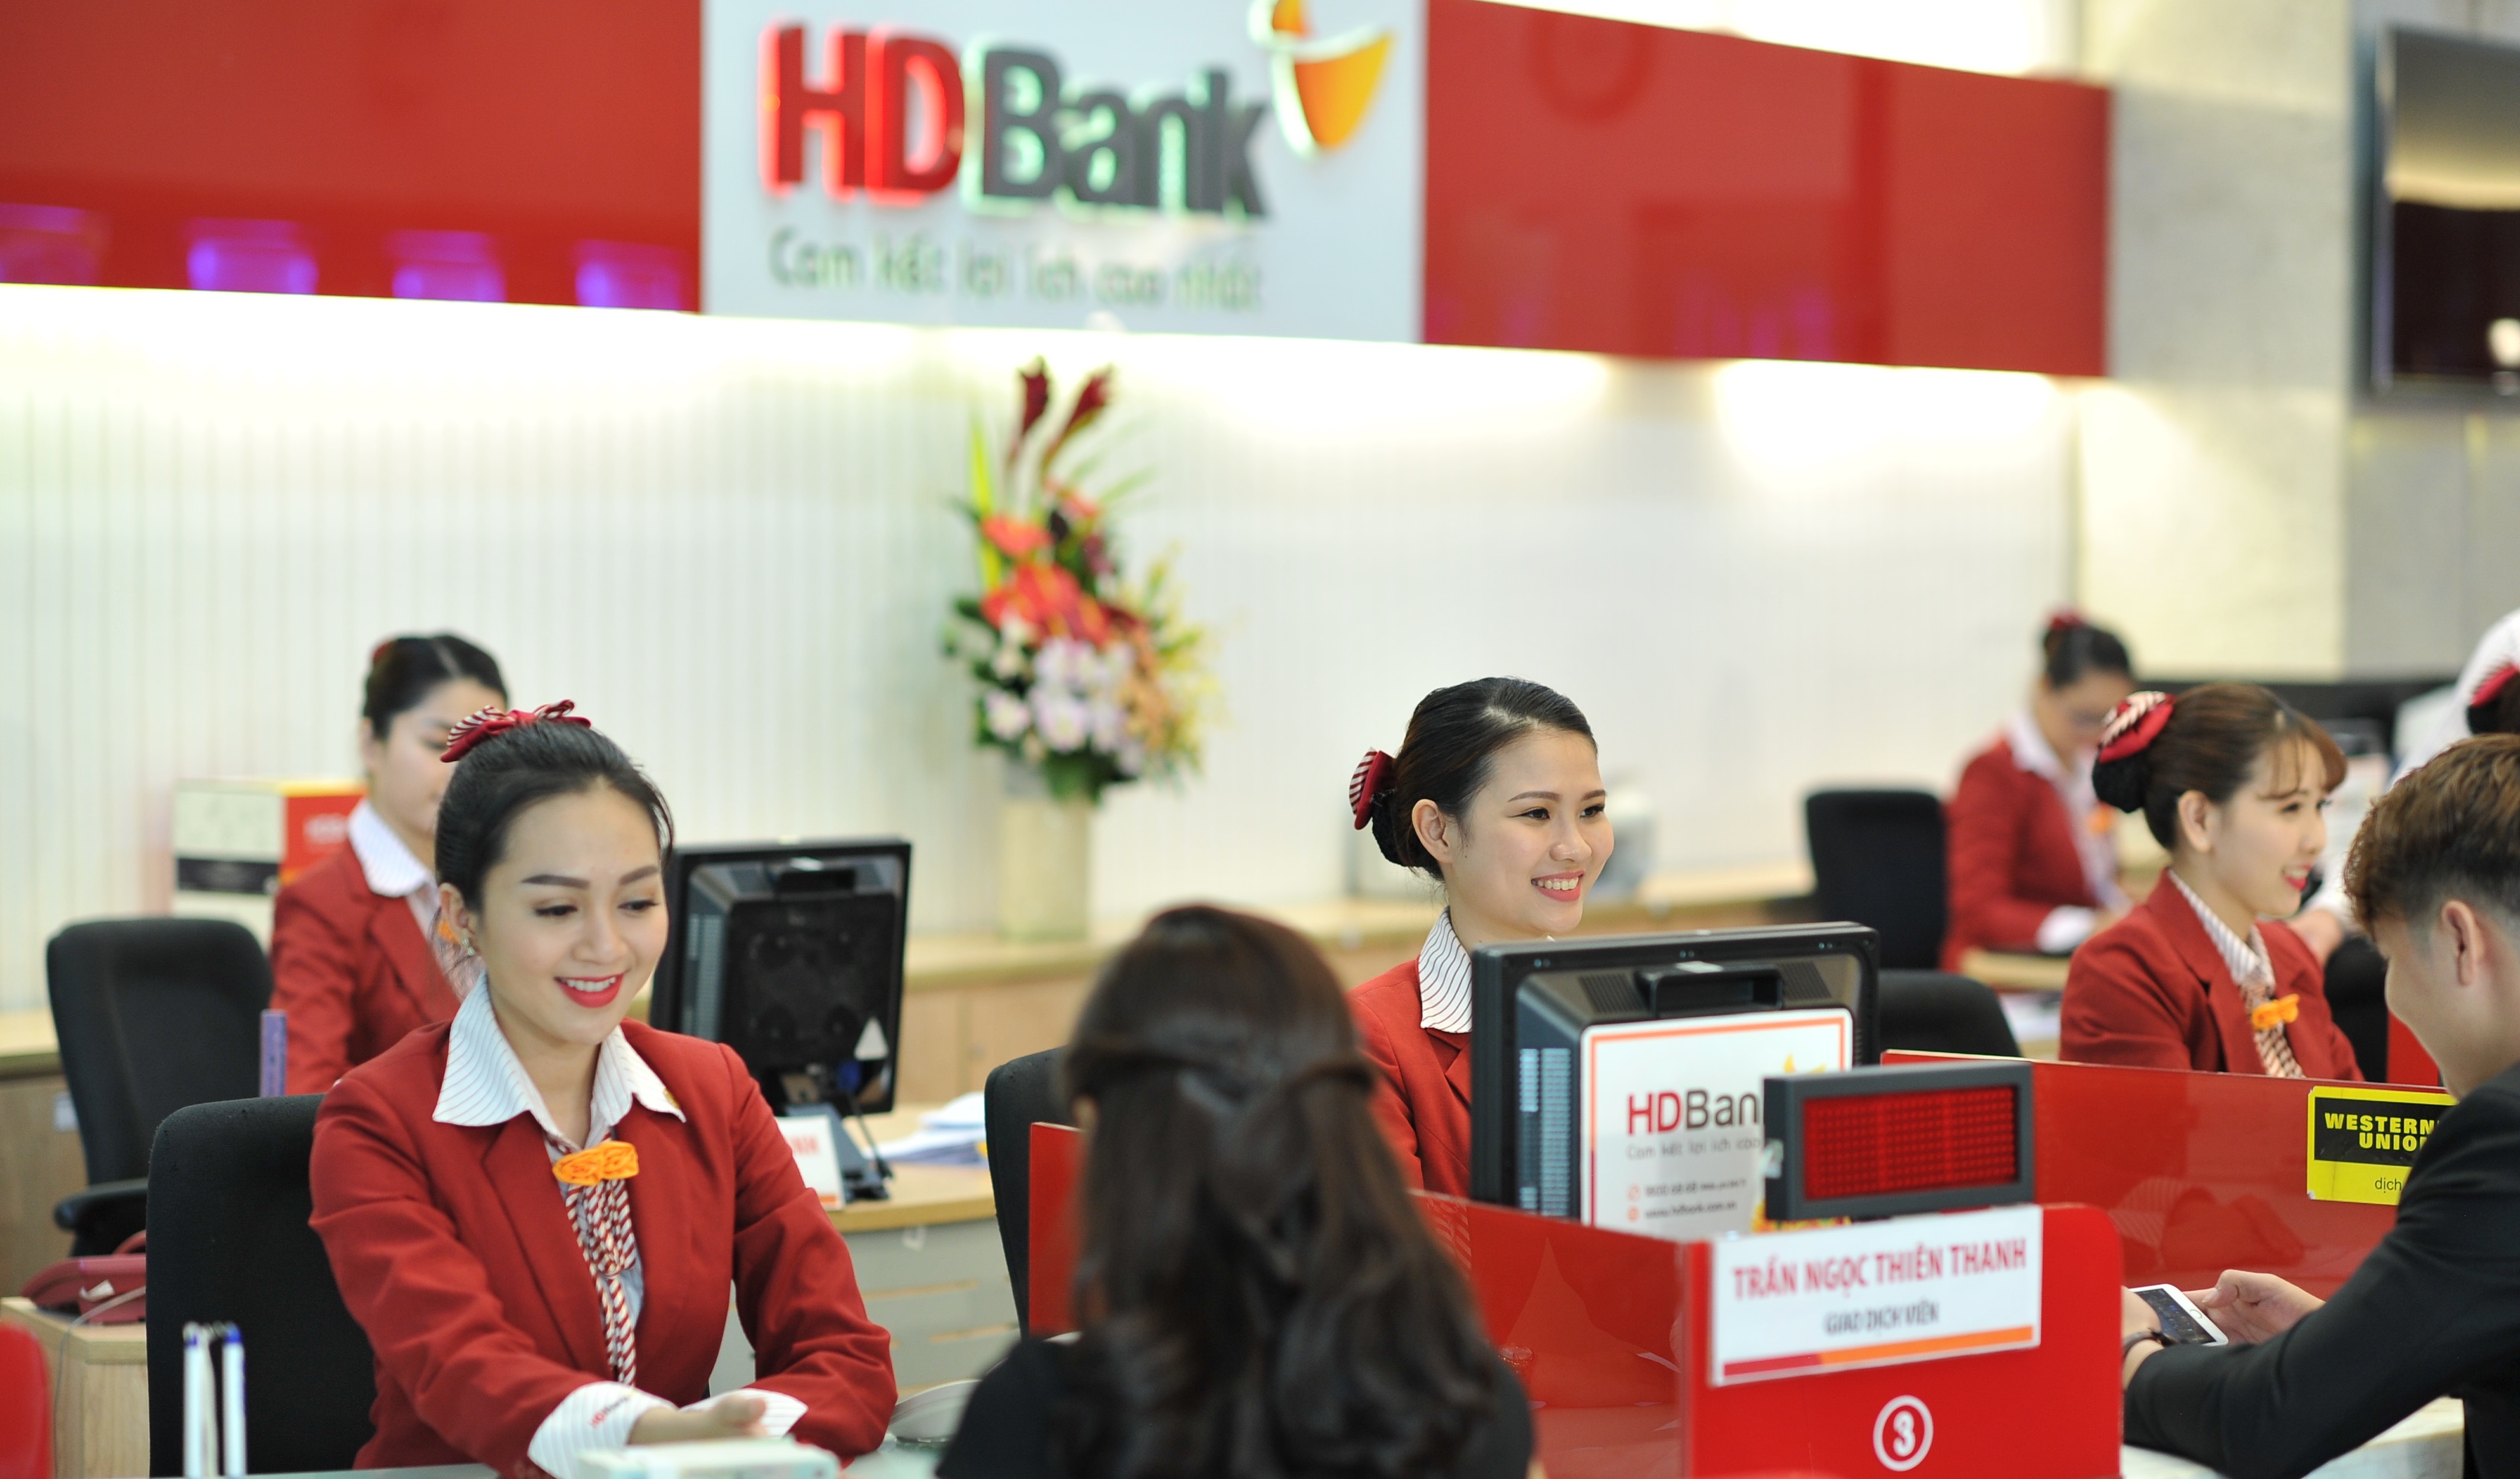 HDBank tuyển dụng hơn 1.000 vị trí sales cho các điểm kinh doanh trên toàn quốc.